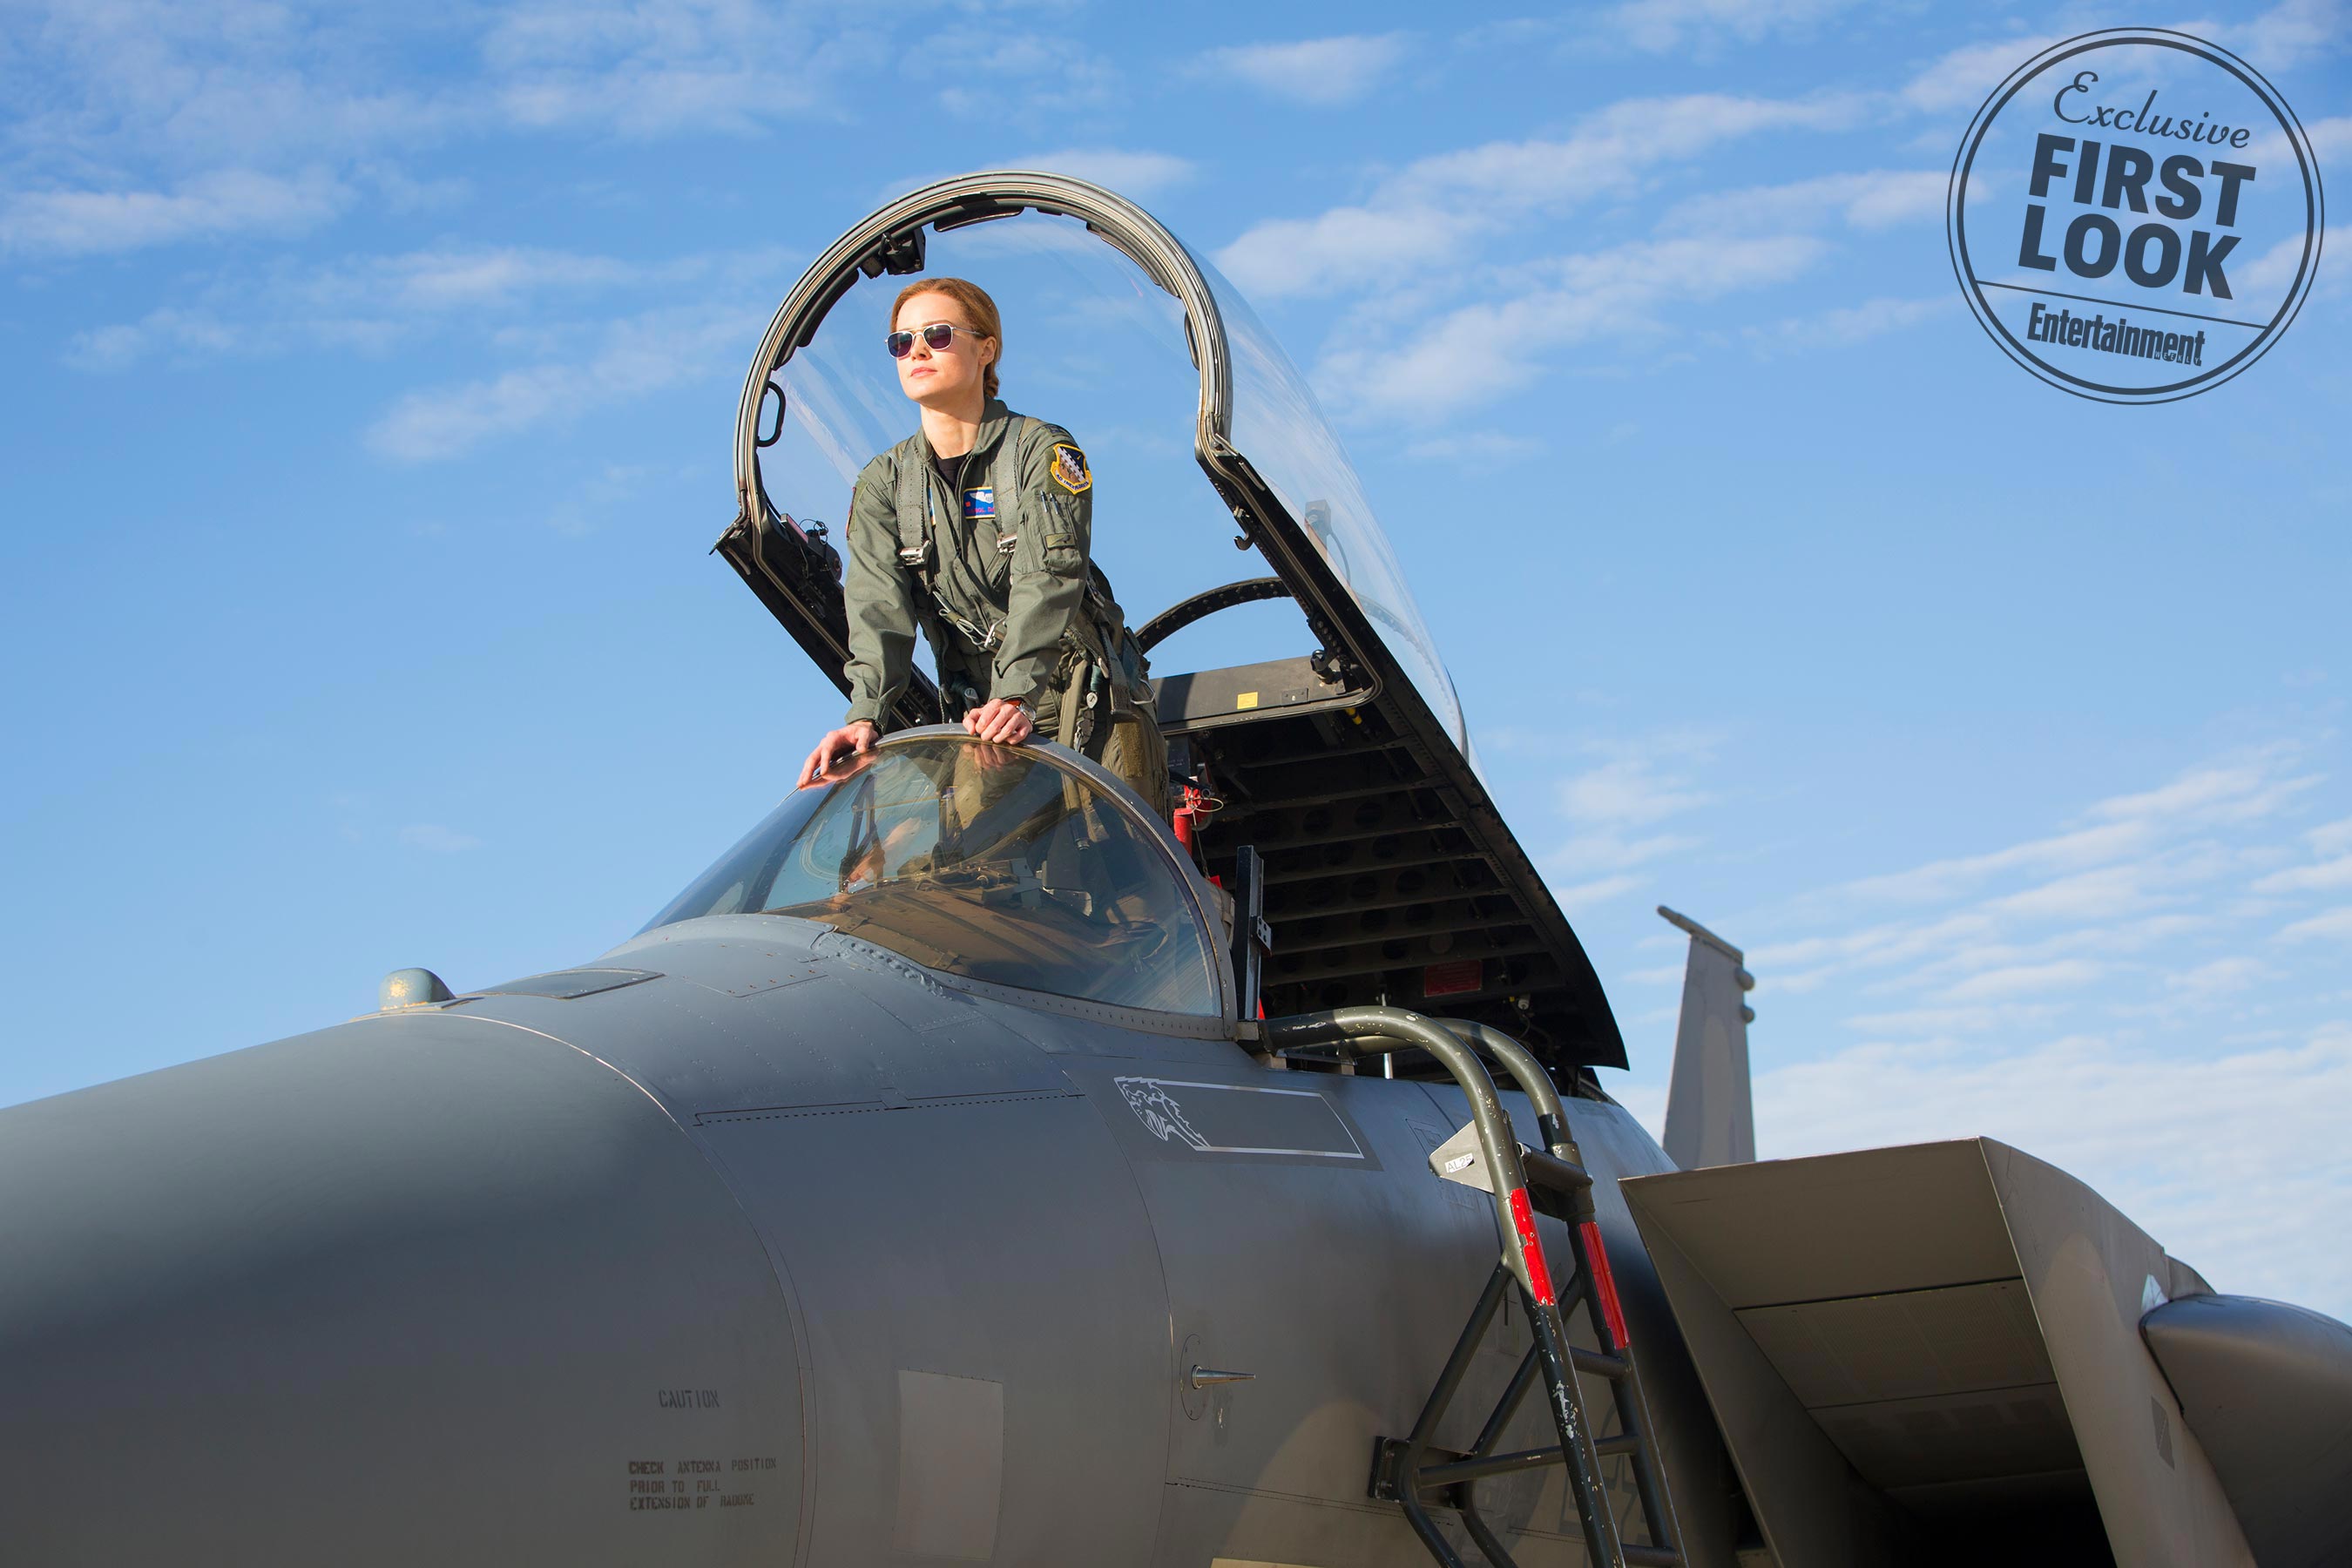 Hőssé válását megelőzően Carol szintén a légierőnek dolgozott, a színésznő pedig tényleges pilótákkal töltött el időt, hogy megfelelően felkészüljön a szerepére.